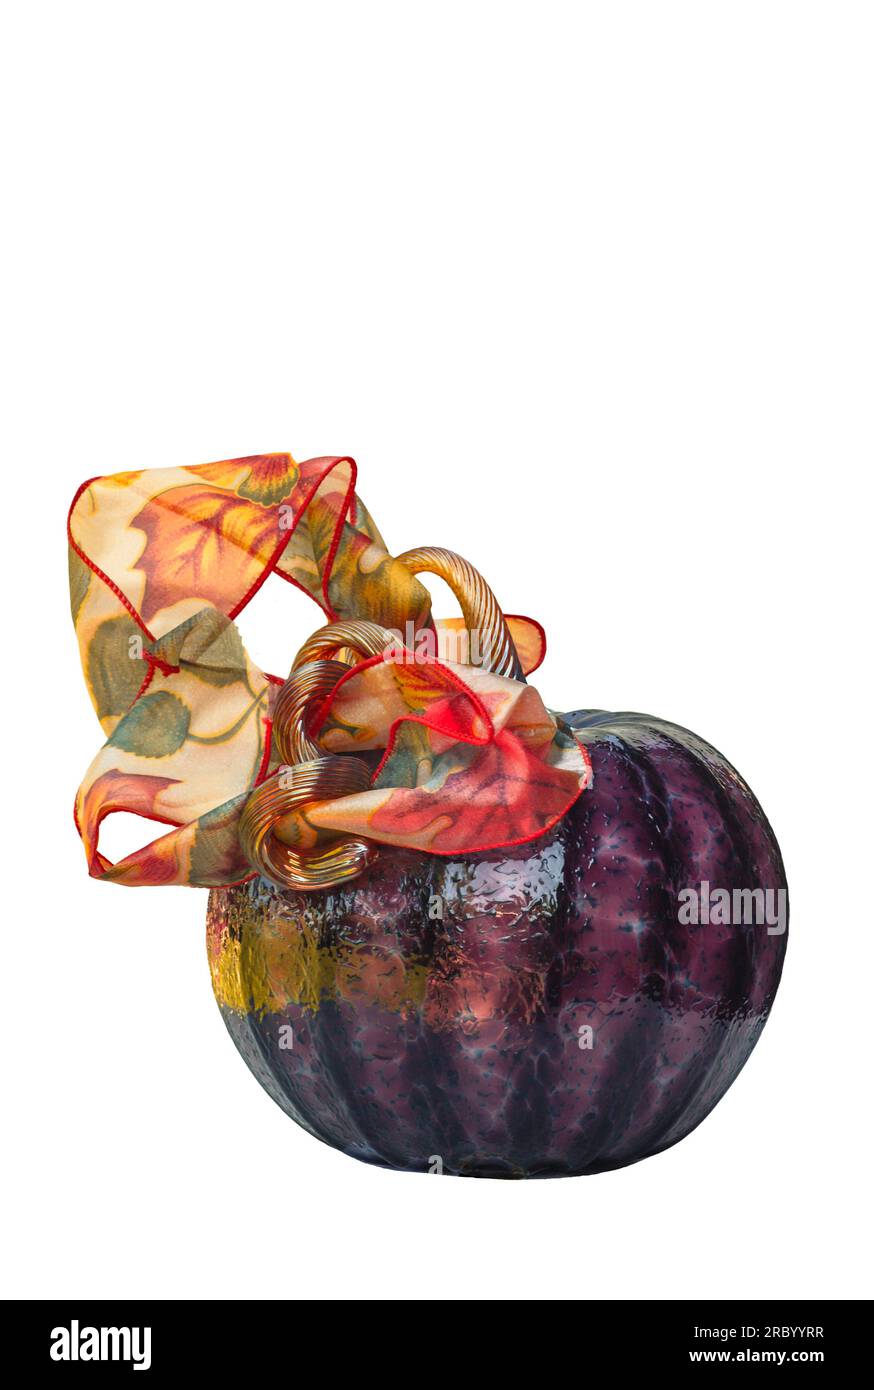 Citrouille en verre soufflé avec ruban d'automne coloré haut dans l'air a une tige tordue. La sculpture violette brille et le ruban entoure comme un couvre-tête. Banque D'Images